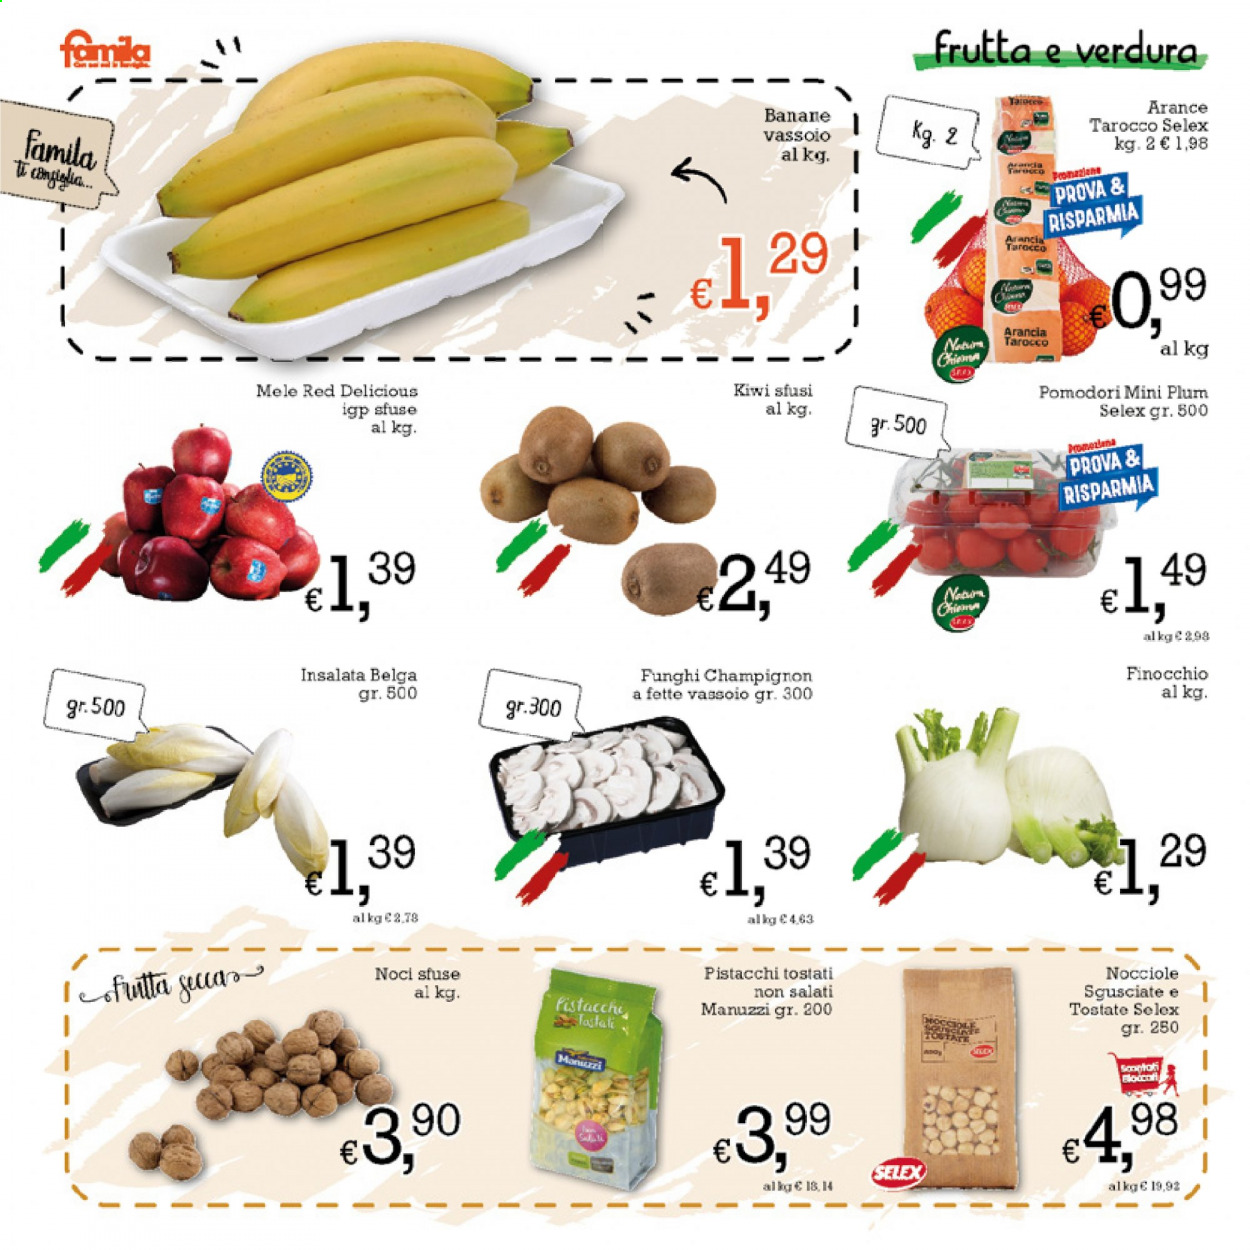 thumbnail - Volantino Famila - 25/2/2021 - 10/3/2021 - Prodotti in offerta - funghi champignon, insalata belga, pomodori, banane, mele, arance, Red Delicious, kiwi, pistacchi, nocciole, noci. Pagina 2.